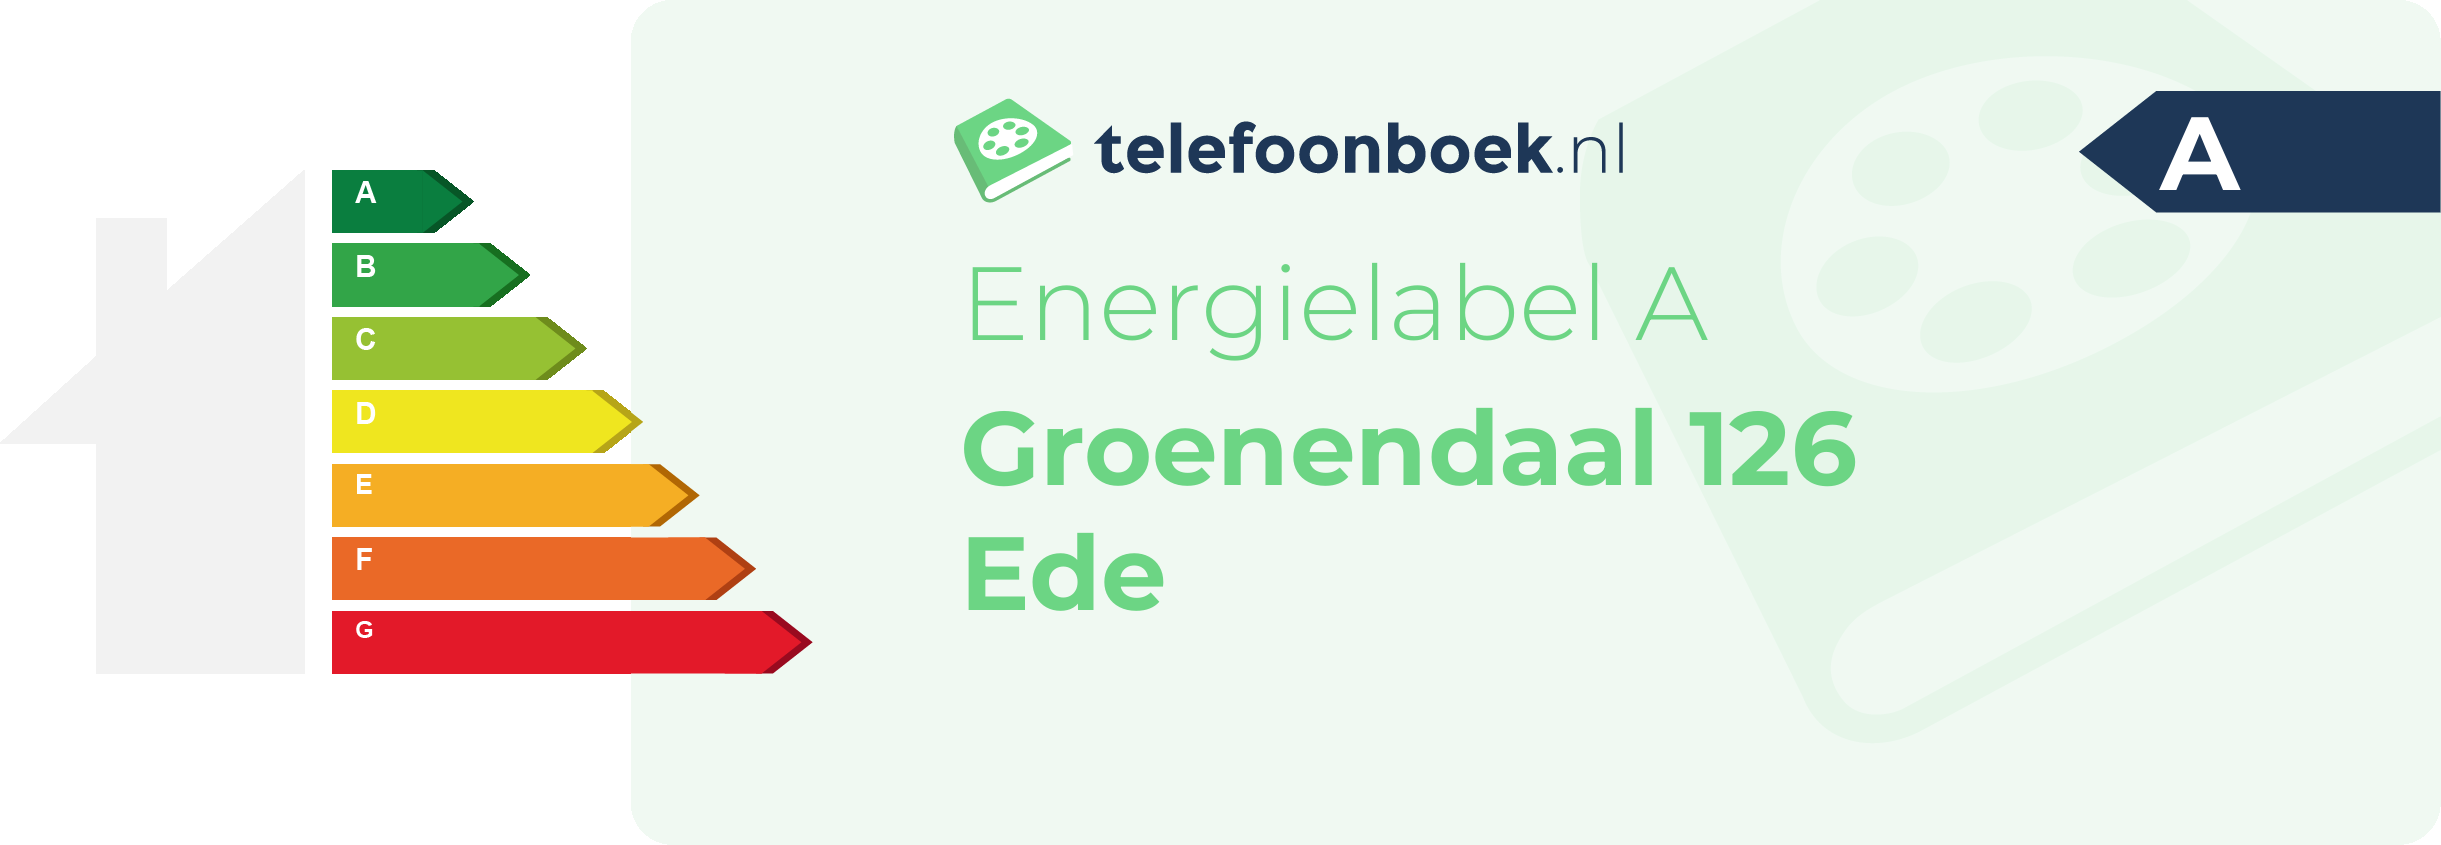 Energielabel Groenendaal 126 Ede